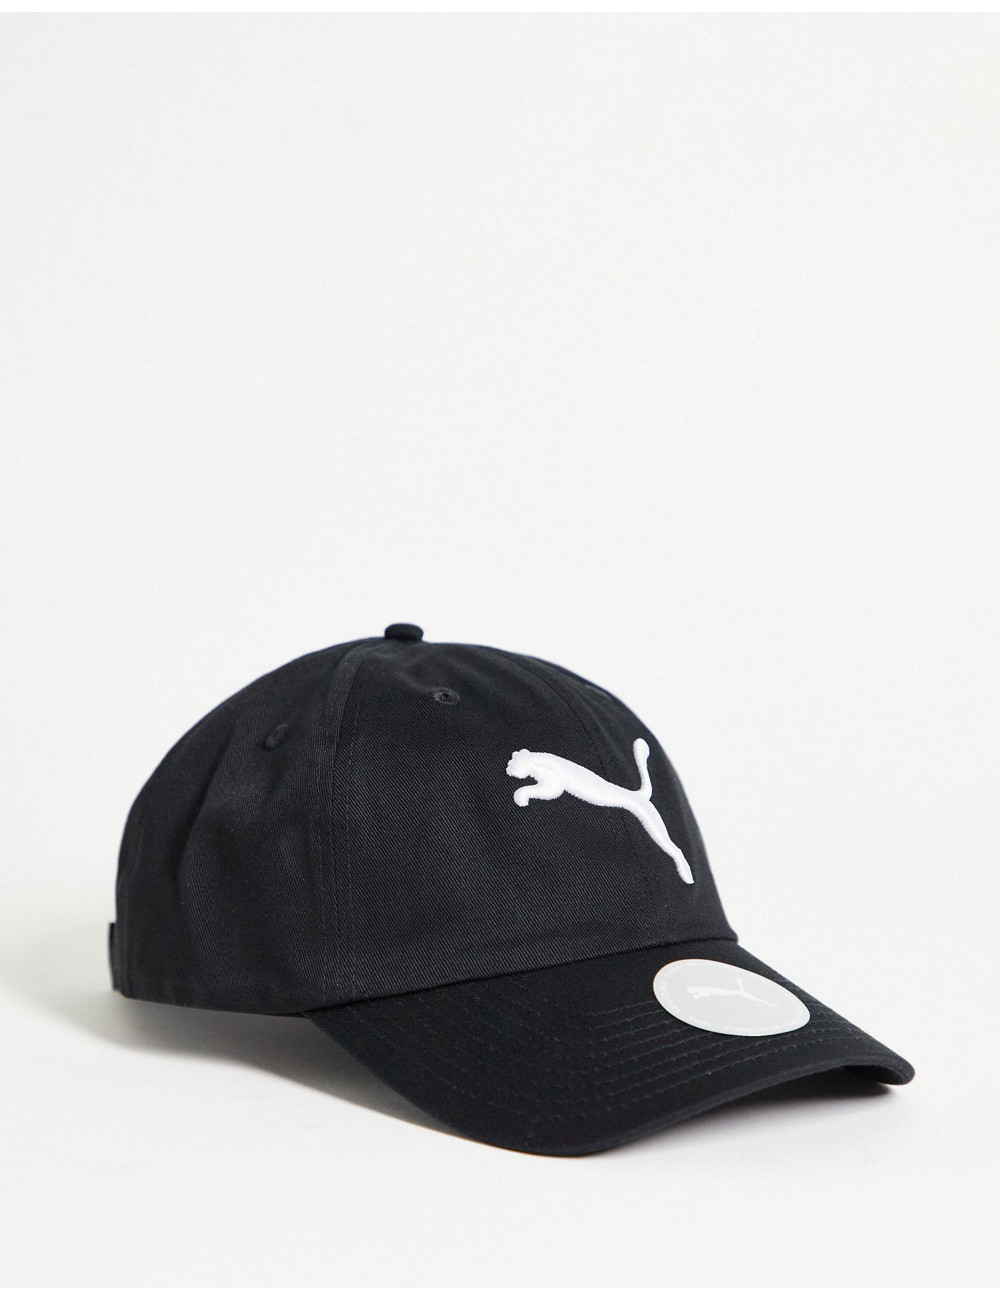 Puma logo cap in black